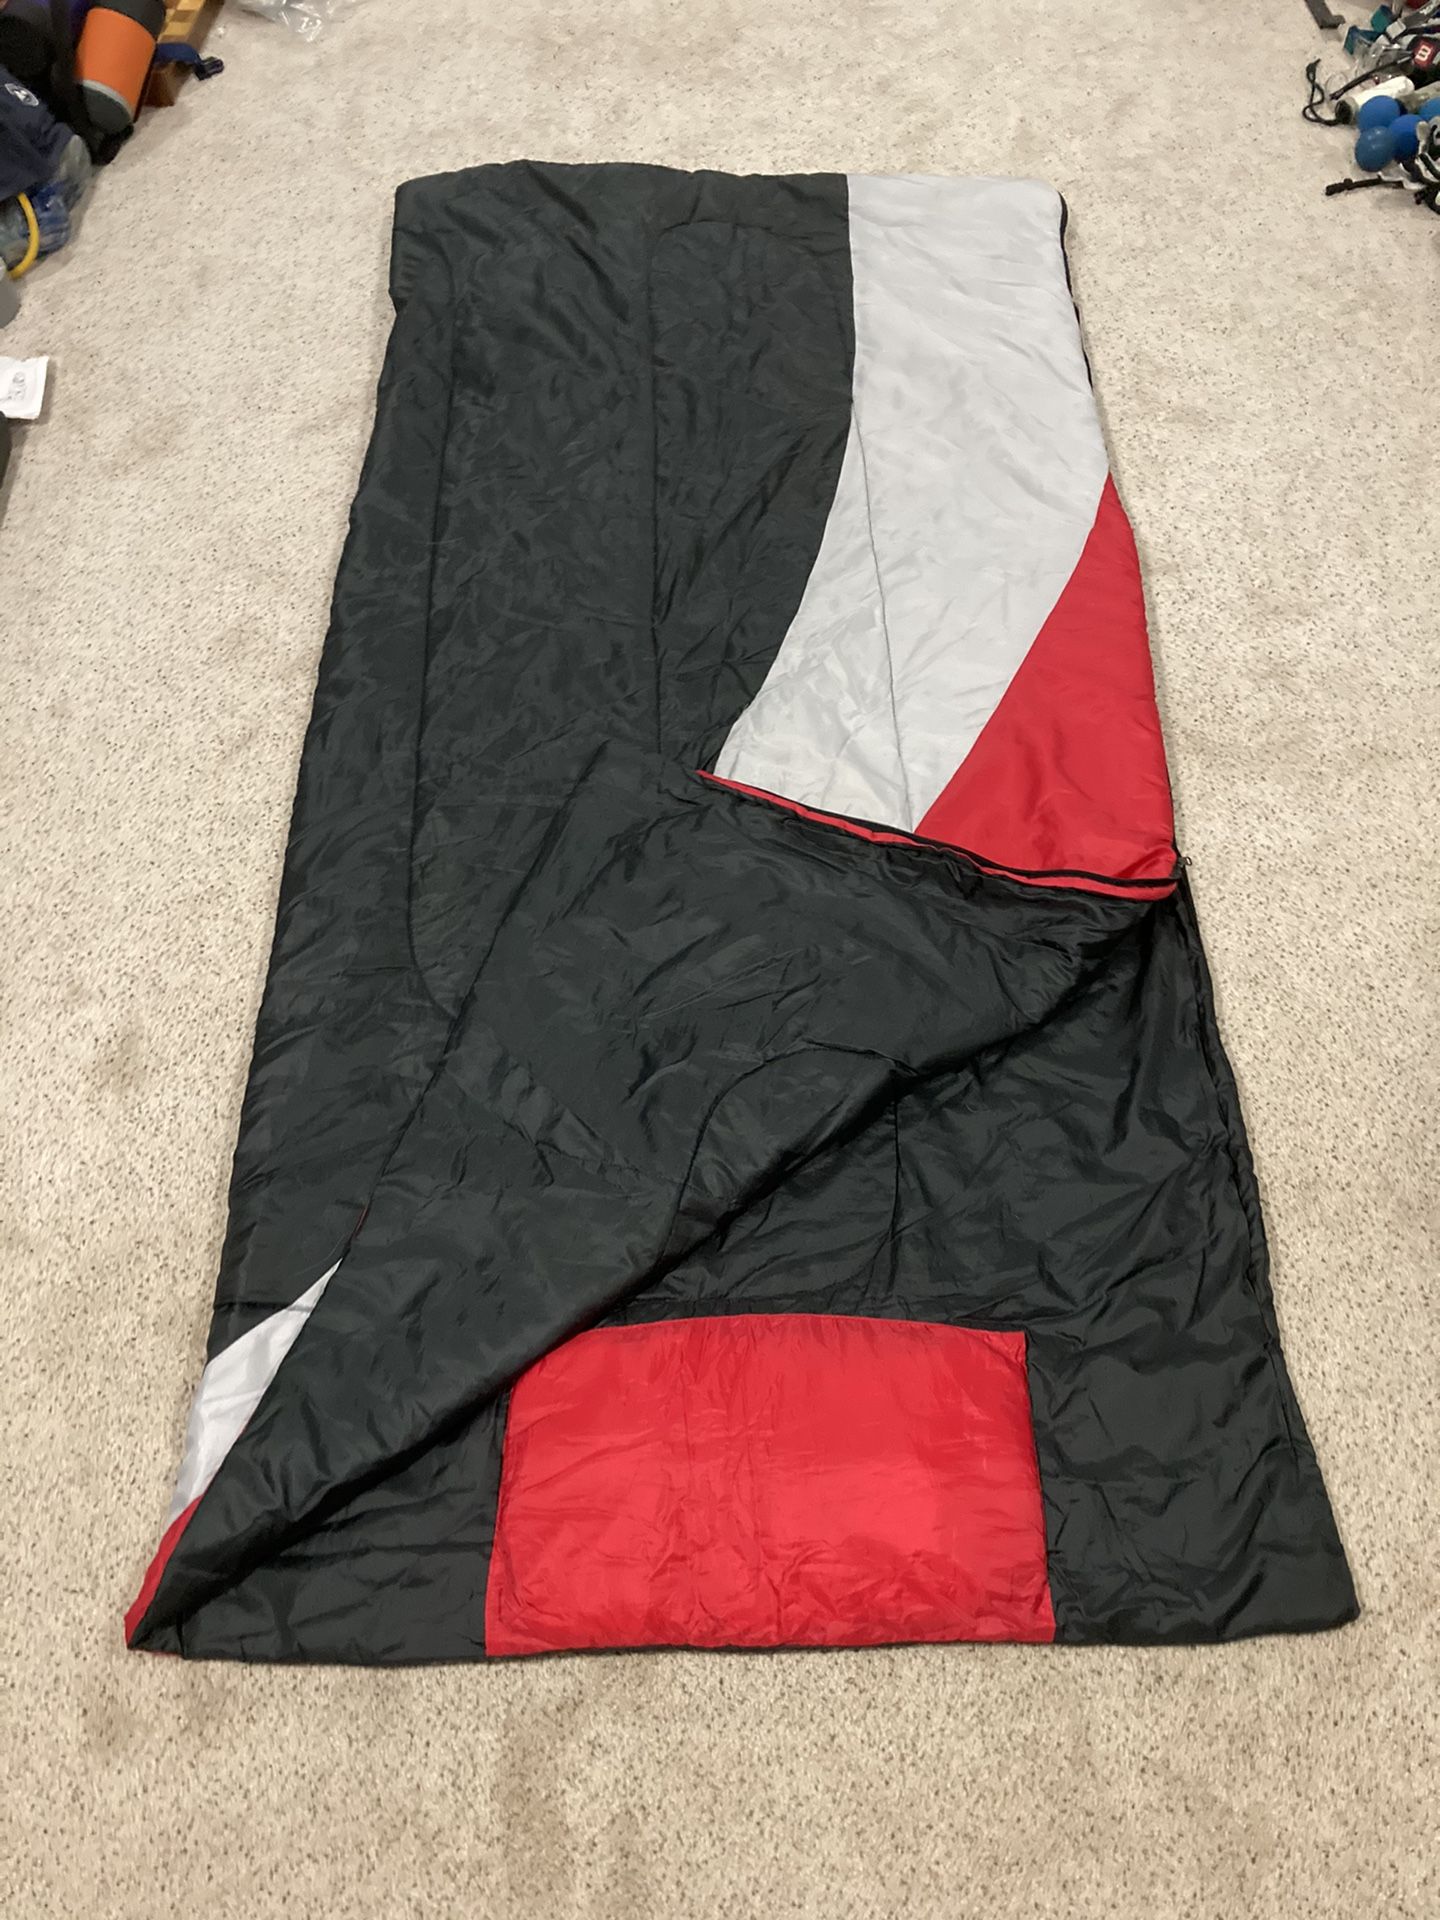 Twin size sleeping bag